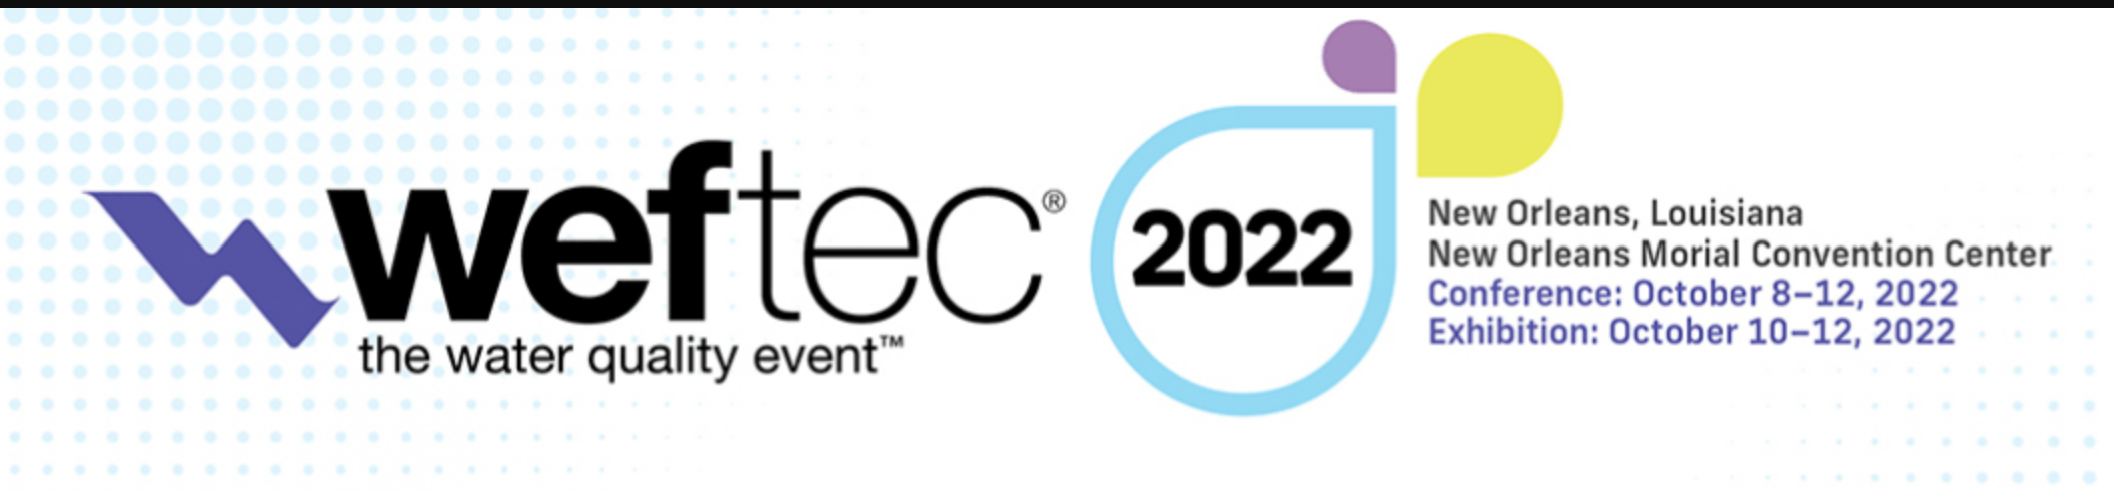 WEFTEC 2022 conference details